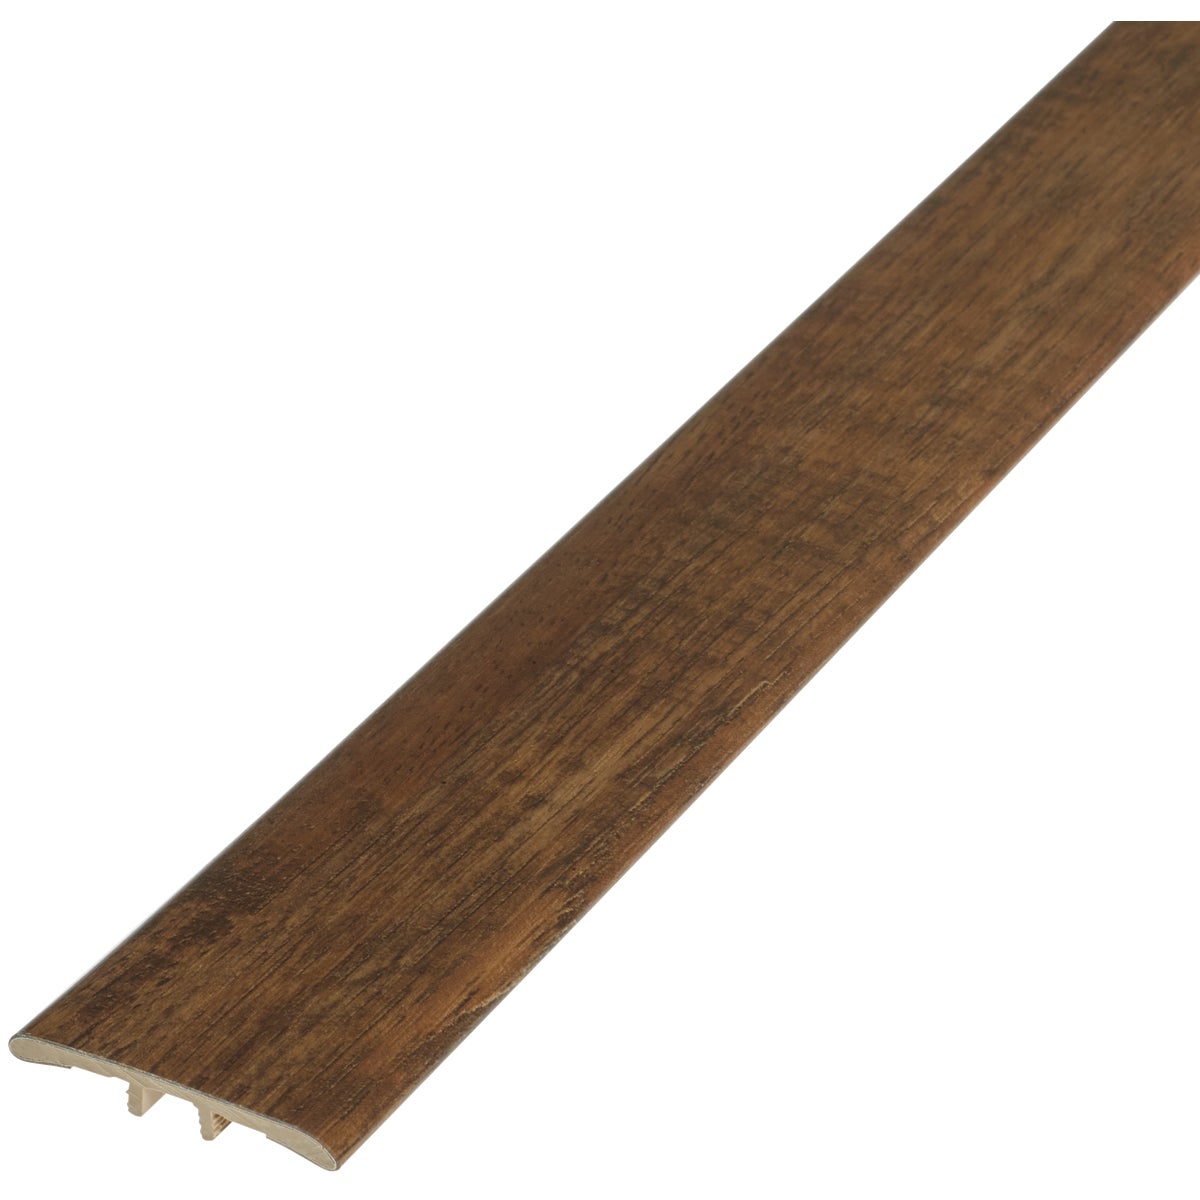 Shaw Impact Modeled Oak 1-3/4 In. W x 94 In. L T Mold Vinyl Floor Plank Trim